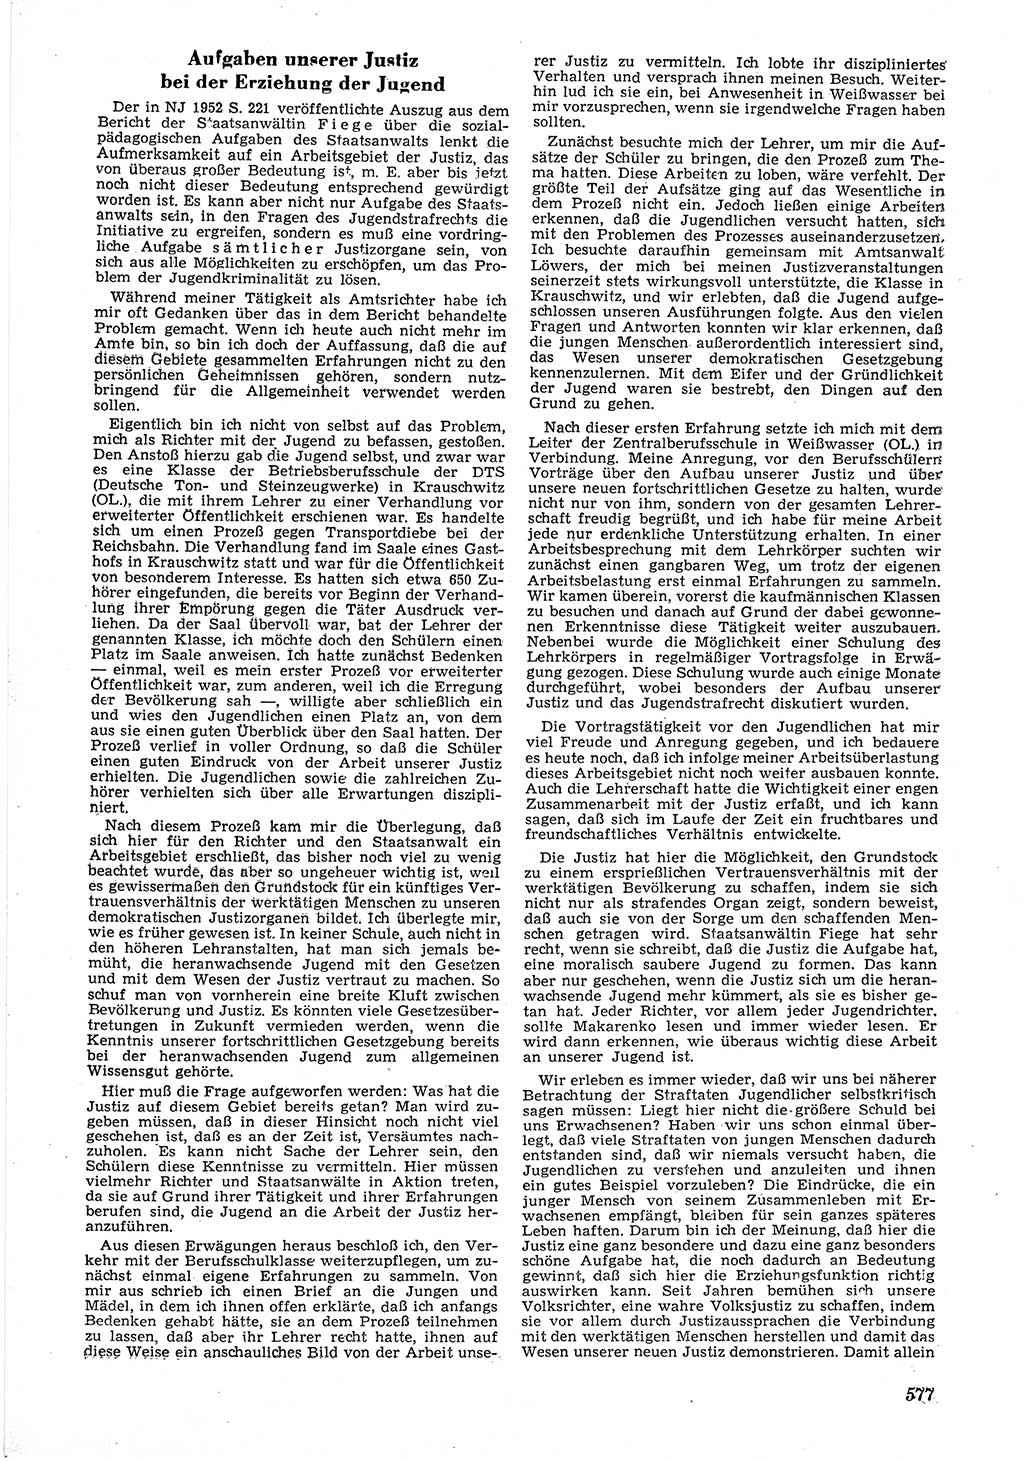 Neue Justiz (NJ), Zeitschrift für Recht und Rechtswissenschaft [Deutsche Demokratische Republik (DDR)], 6. Jahrgang 1952, Seite 577 (NJ DDR 1952, S. 577)